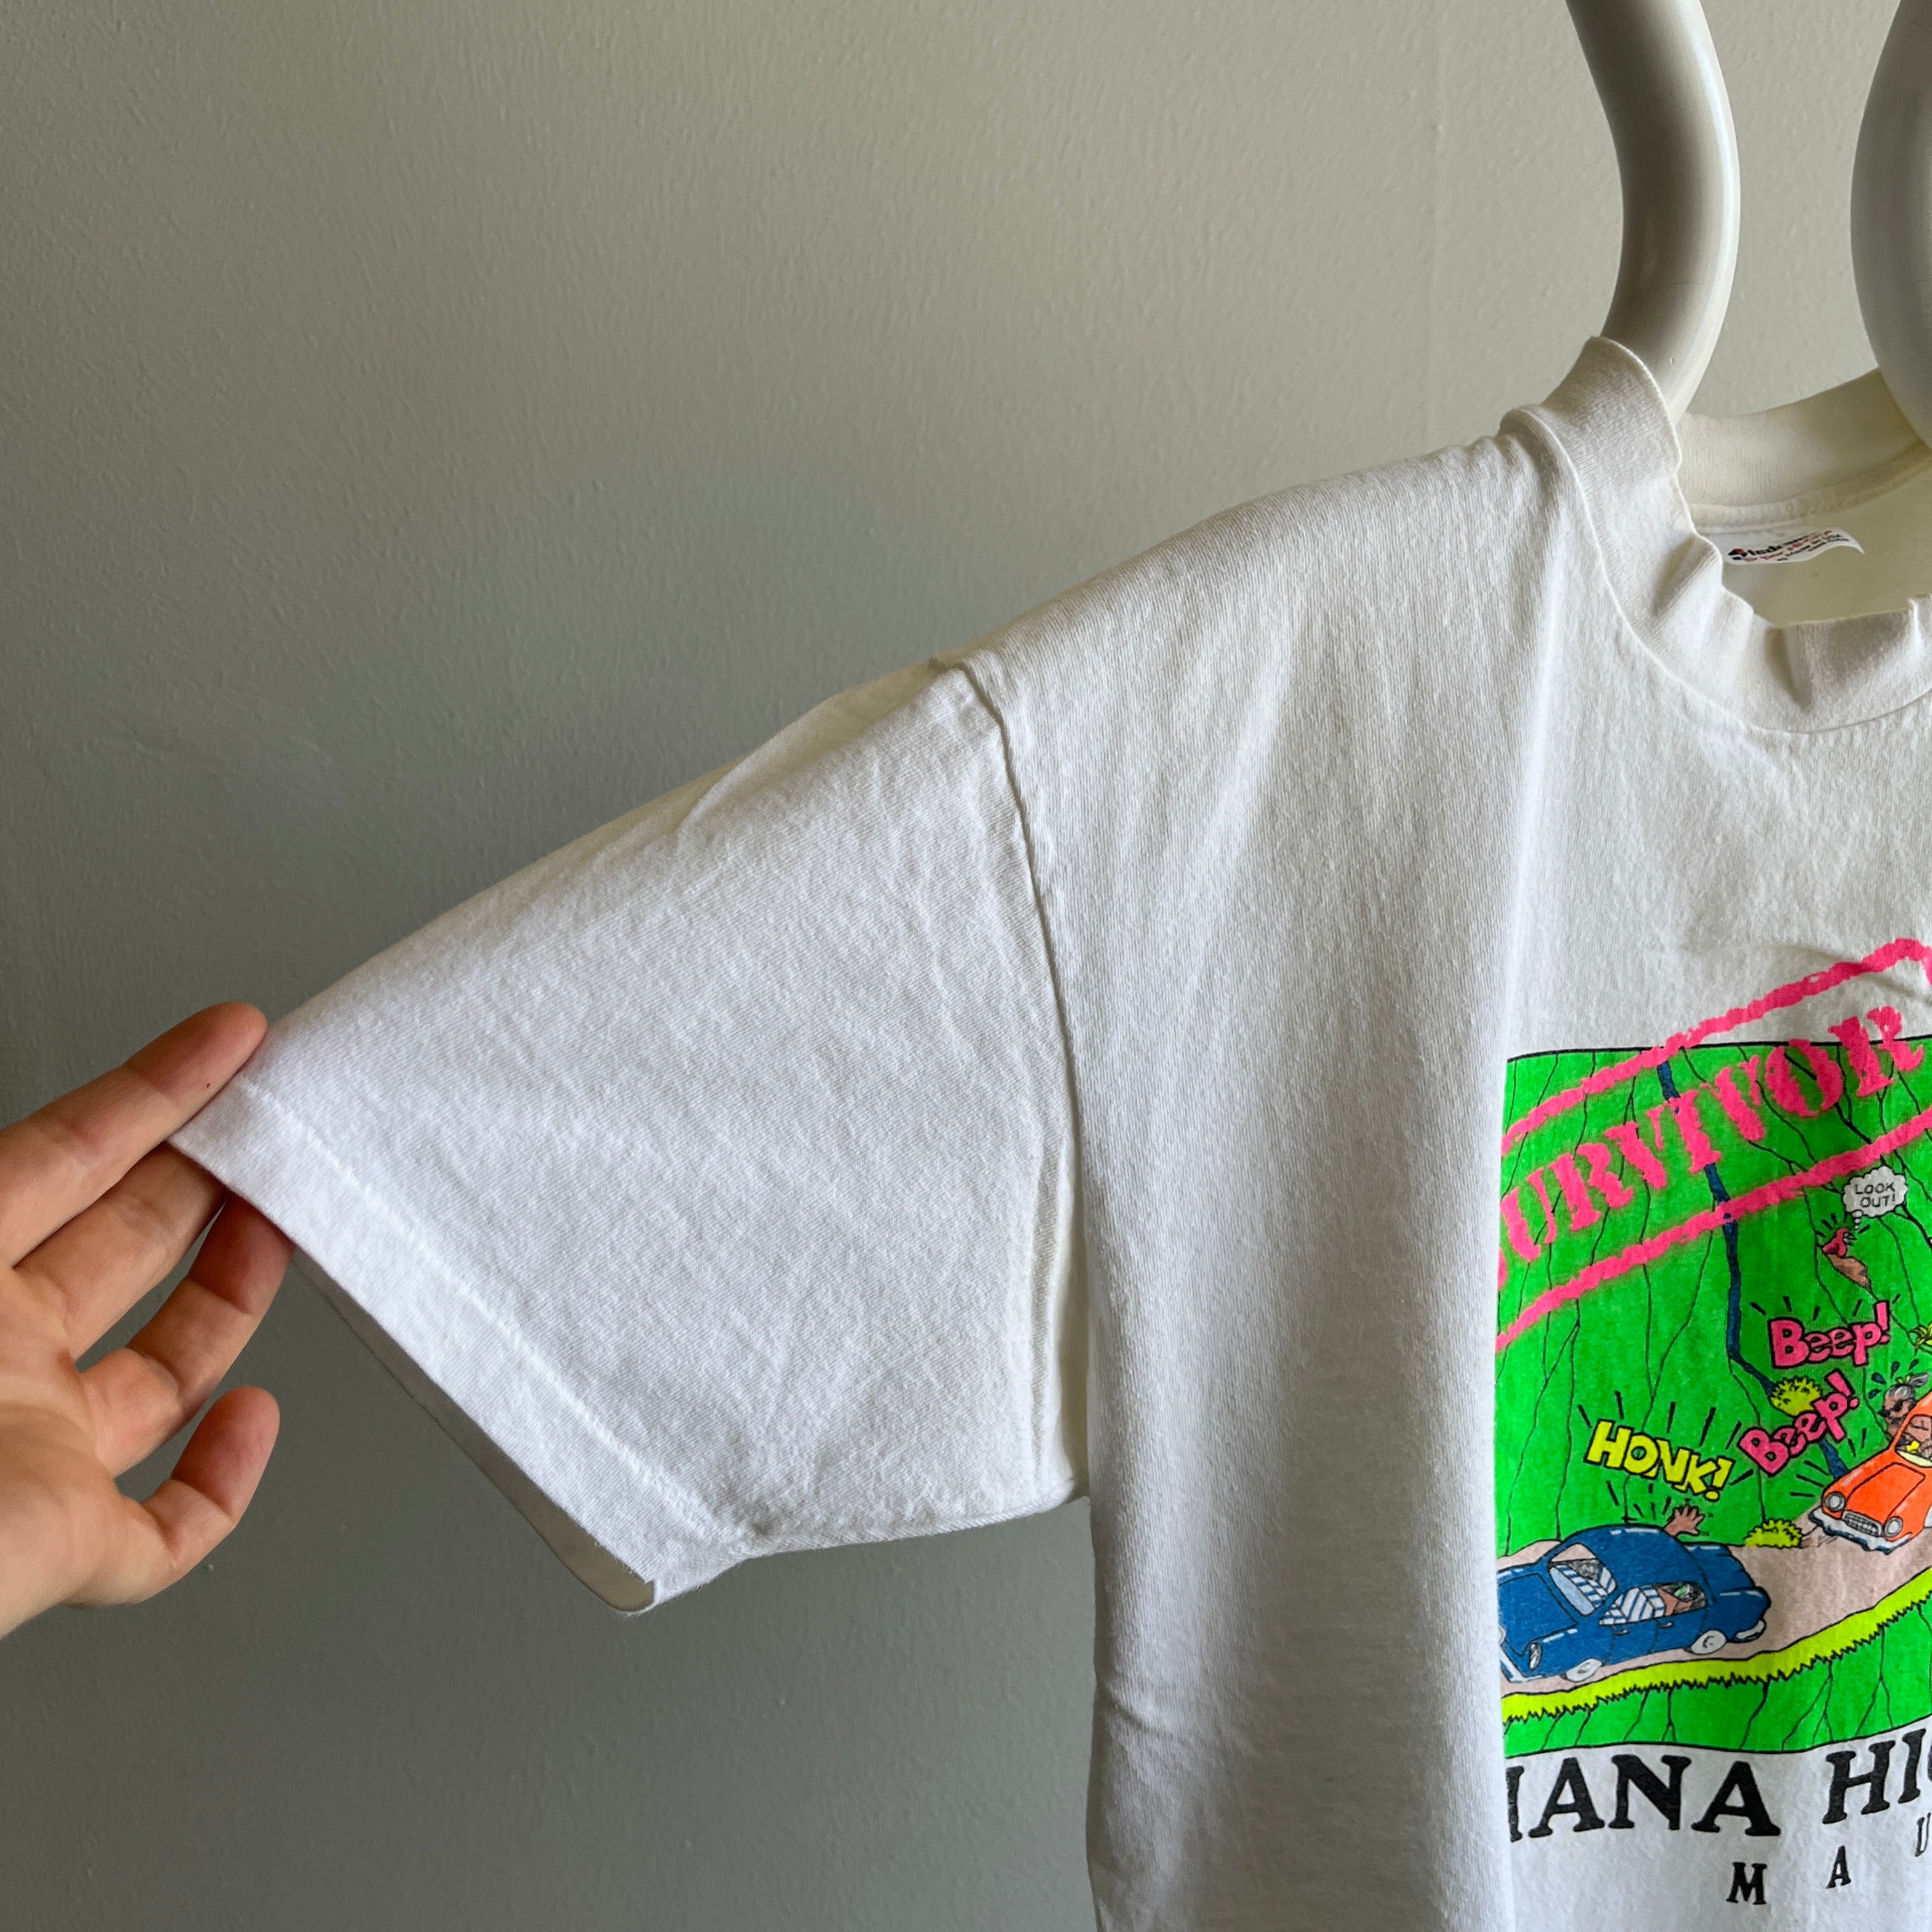 1990 Hana Highway, T-shirt touristique de Maui